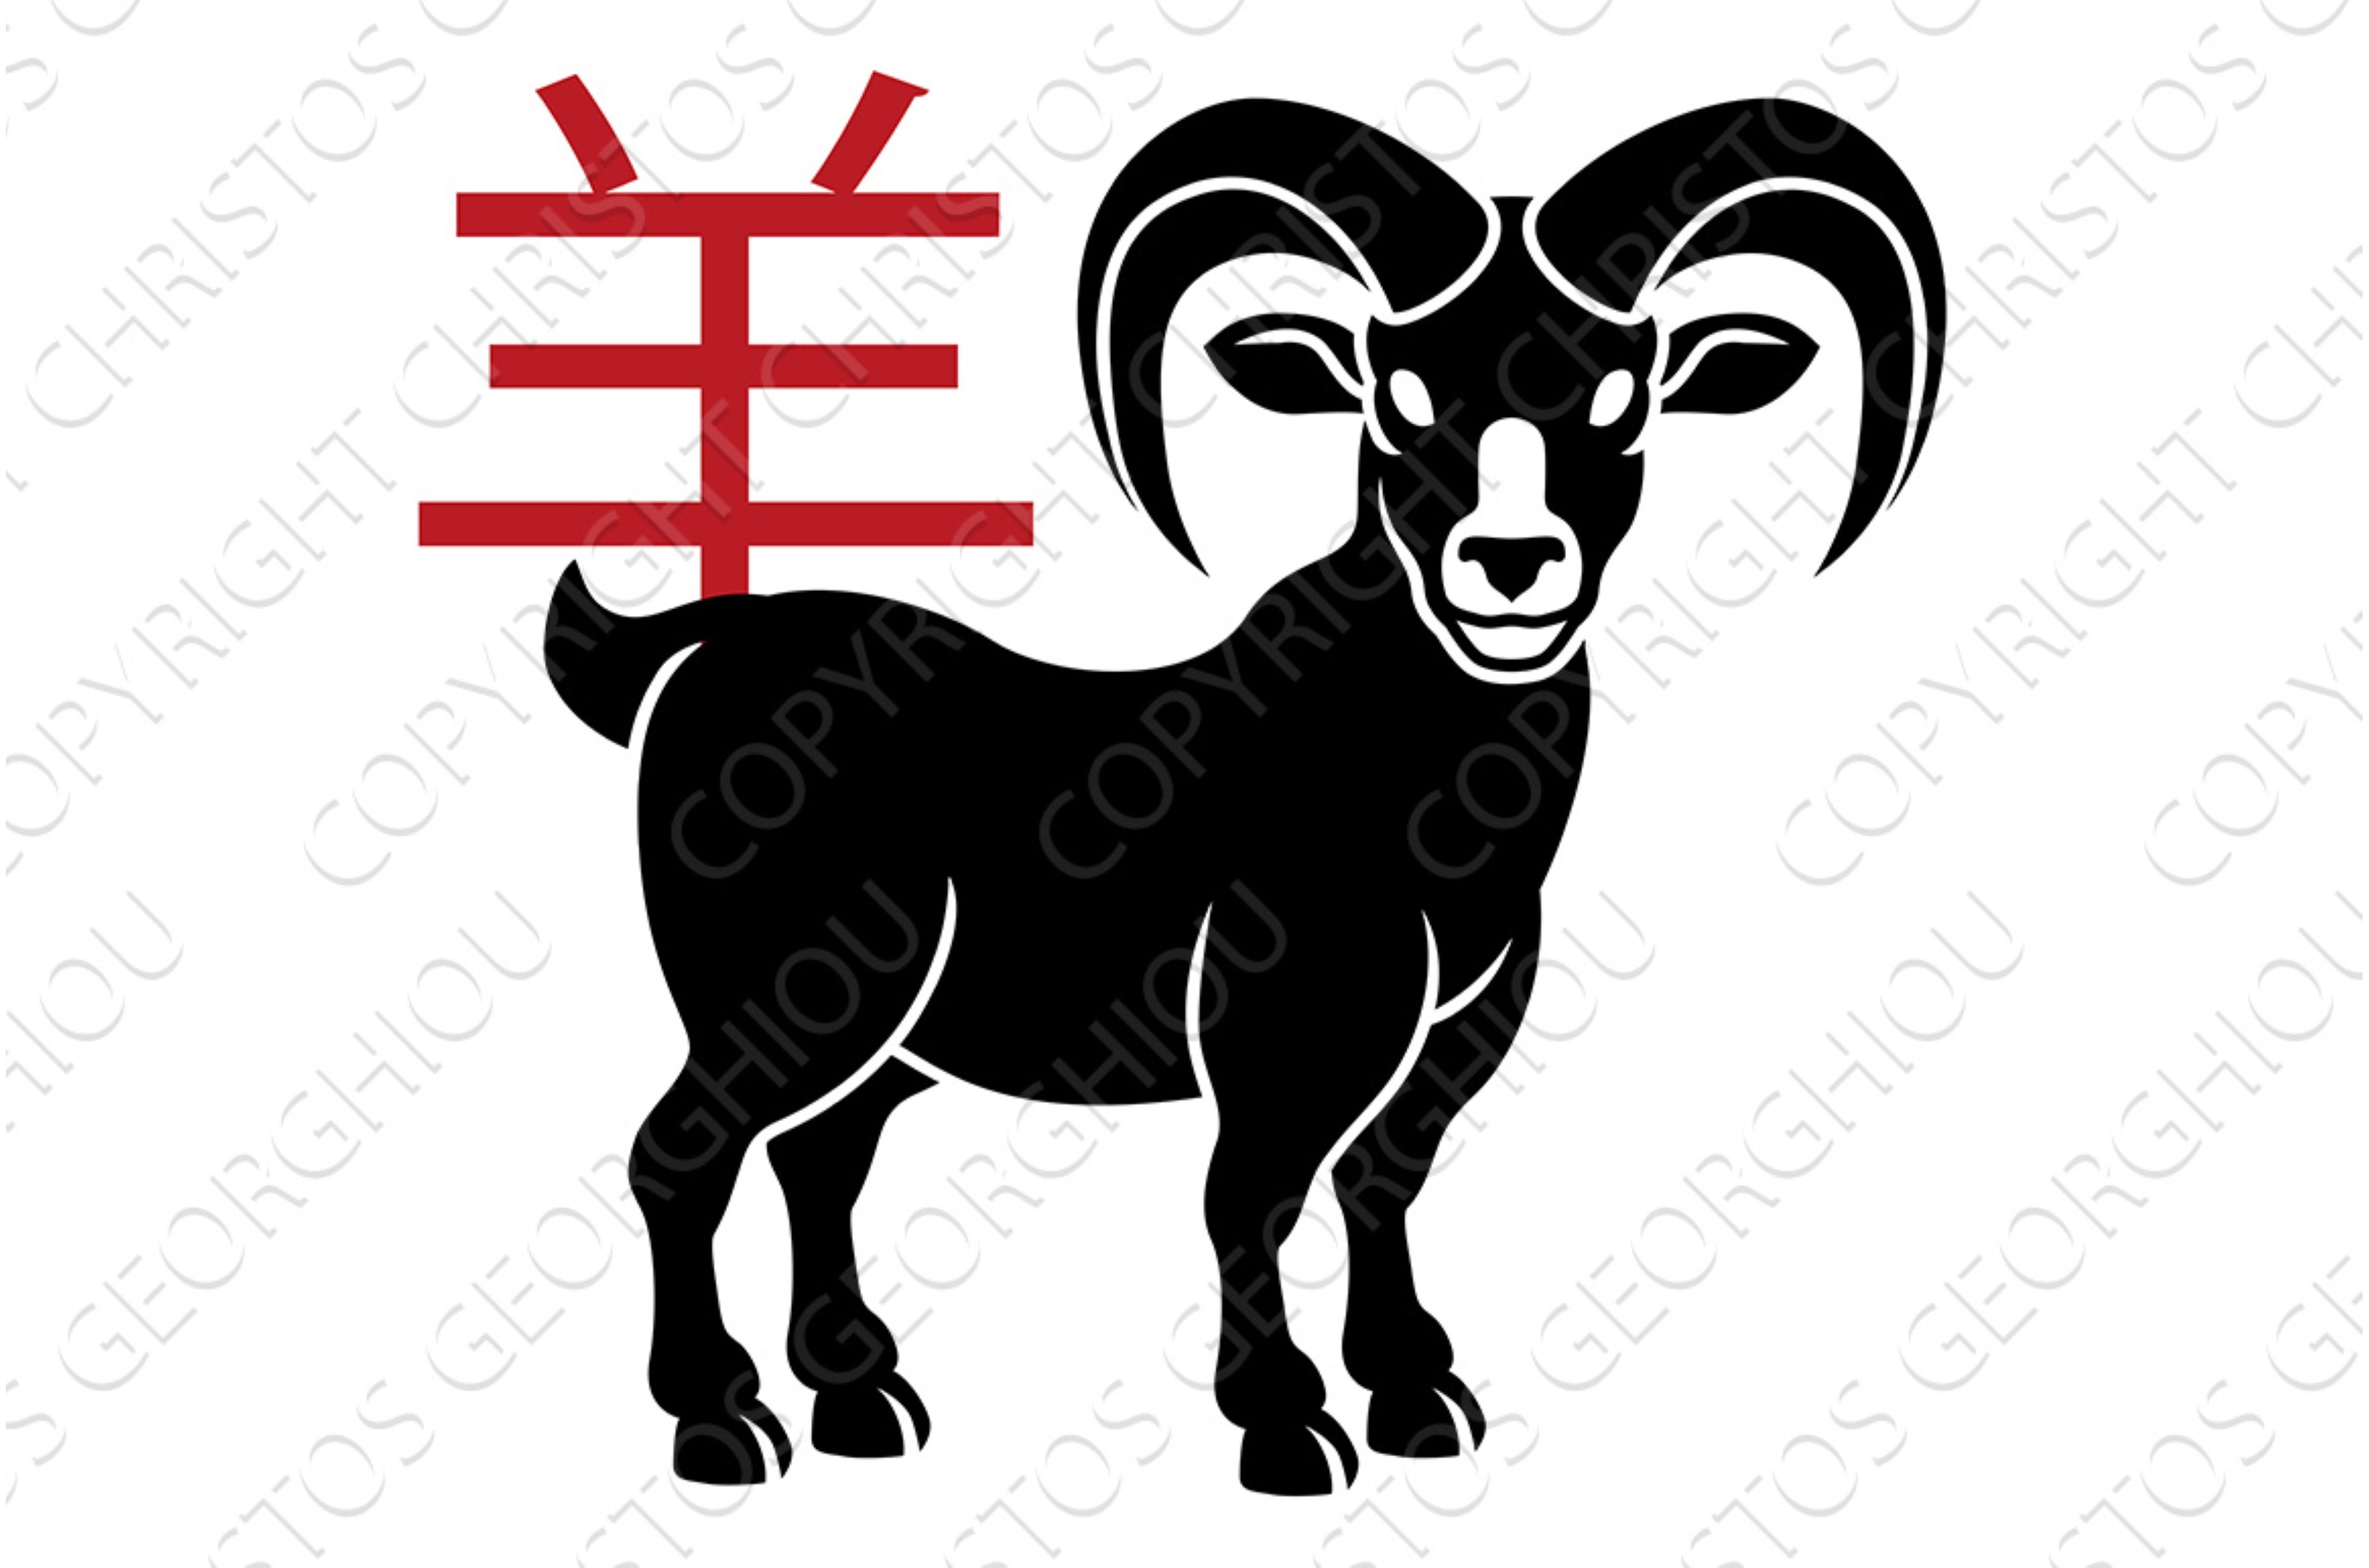 Ram Goat Chinese Zodiac Horoscope cover image.